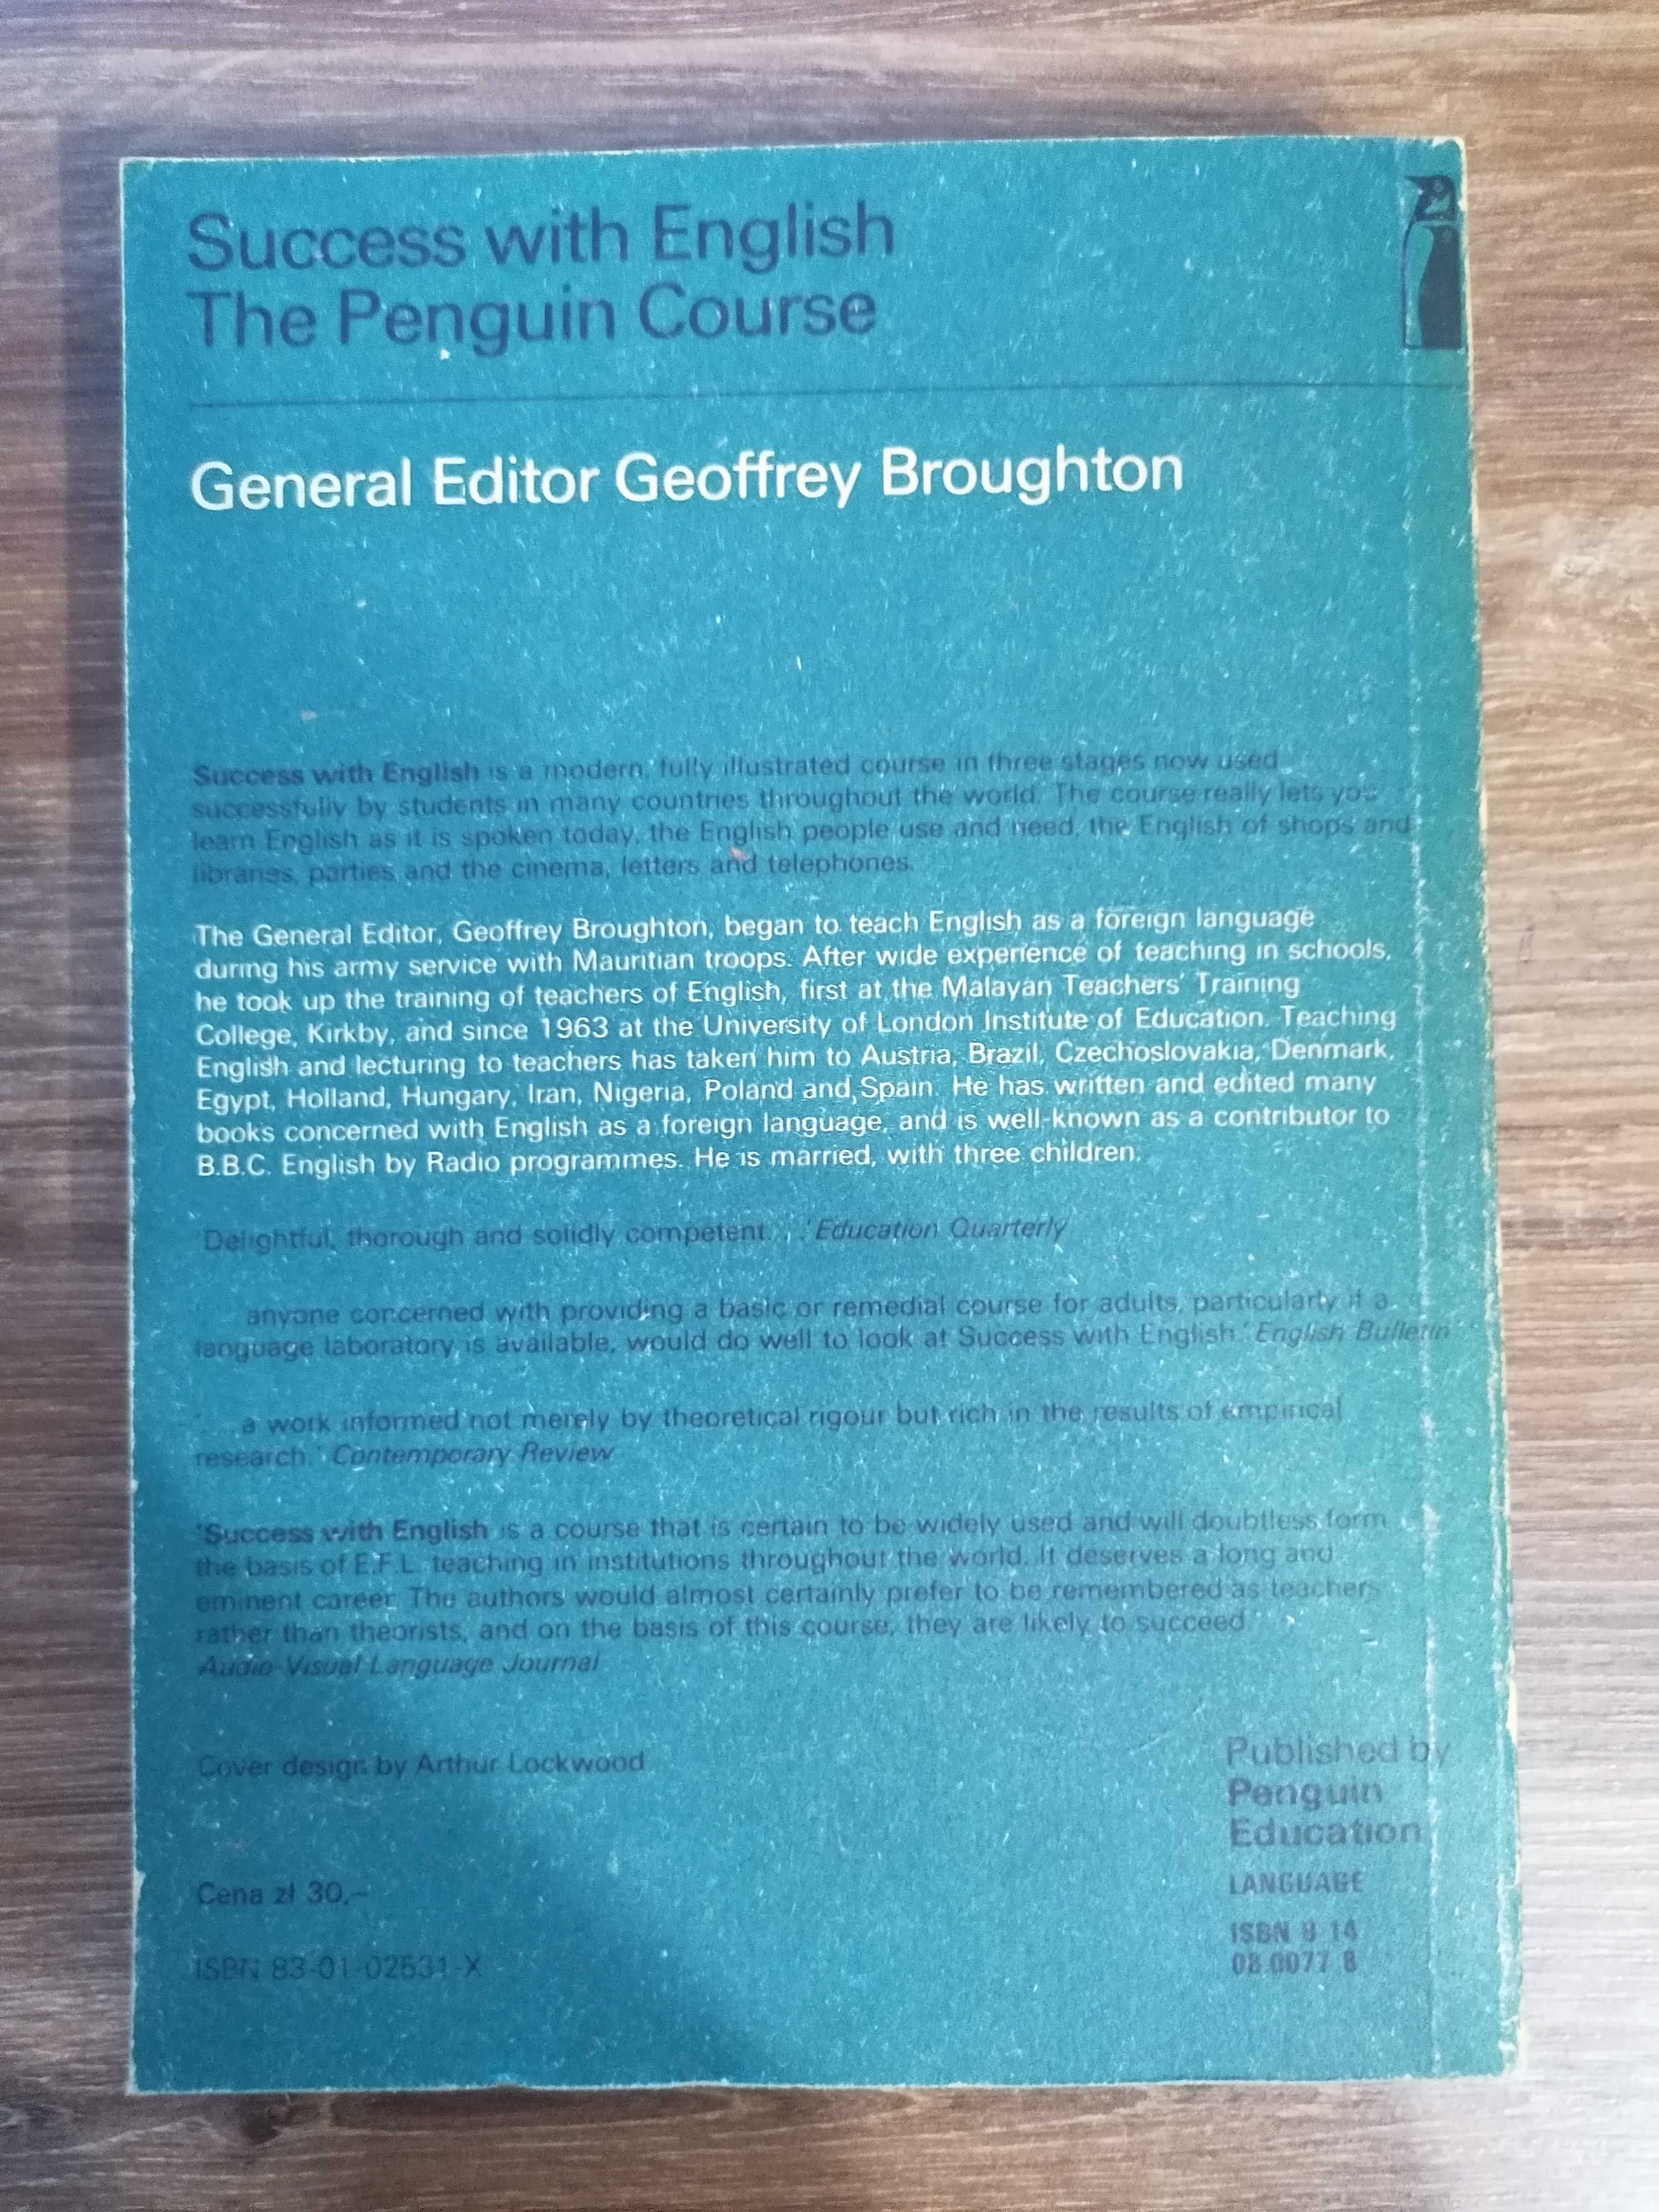 Geoffrey Broughton - "Coursebook 2", książka w j. angielskim